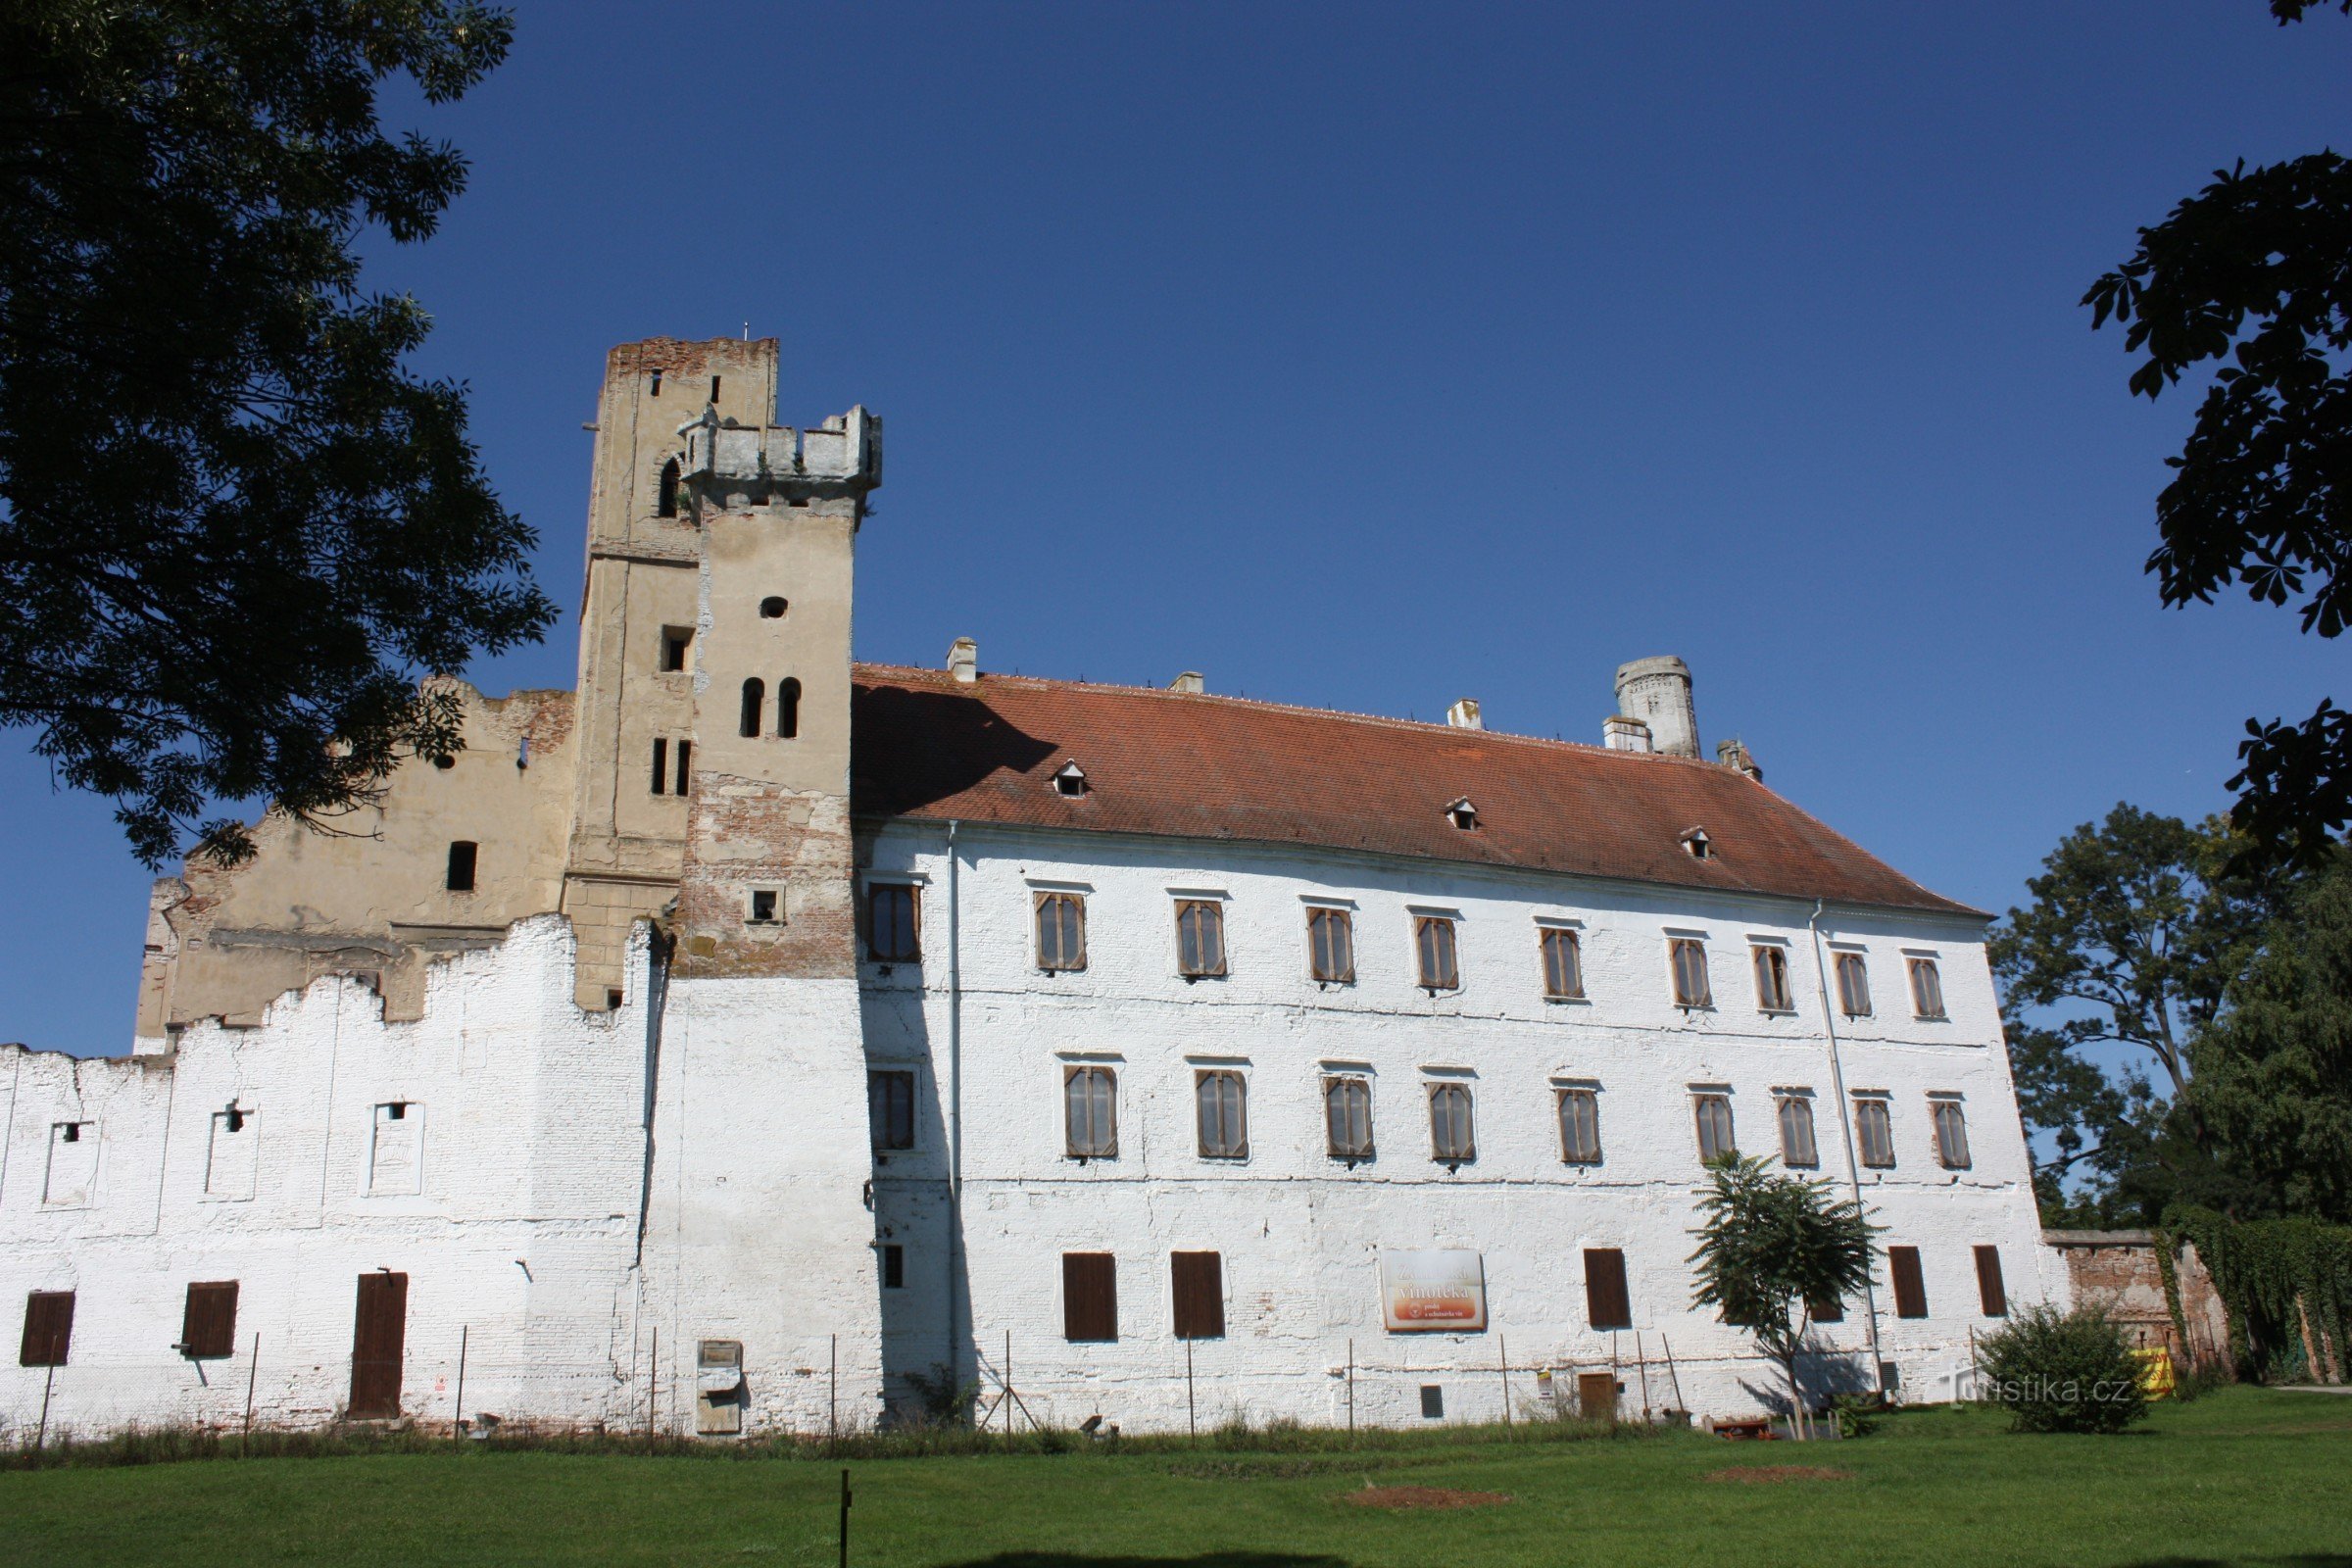 ブジェツラフ城、もともとは 11 世紀の丘陵地に建つ城でした